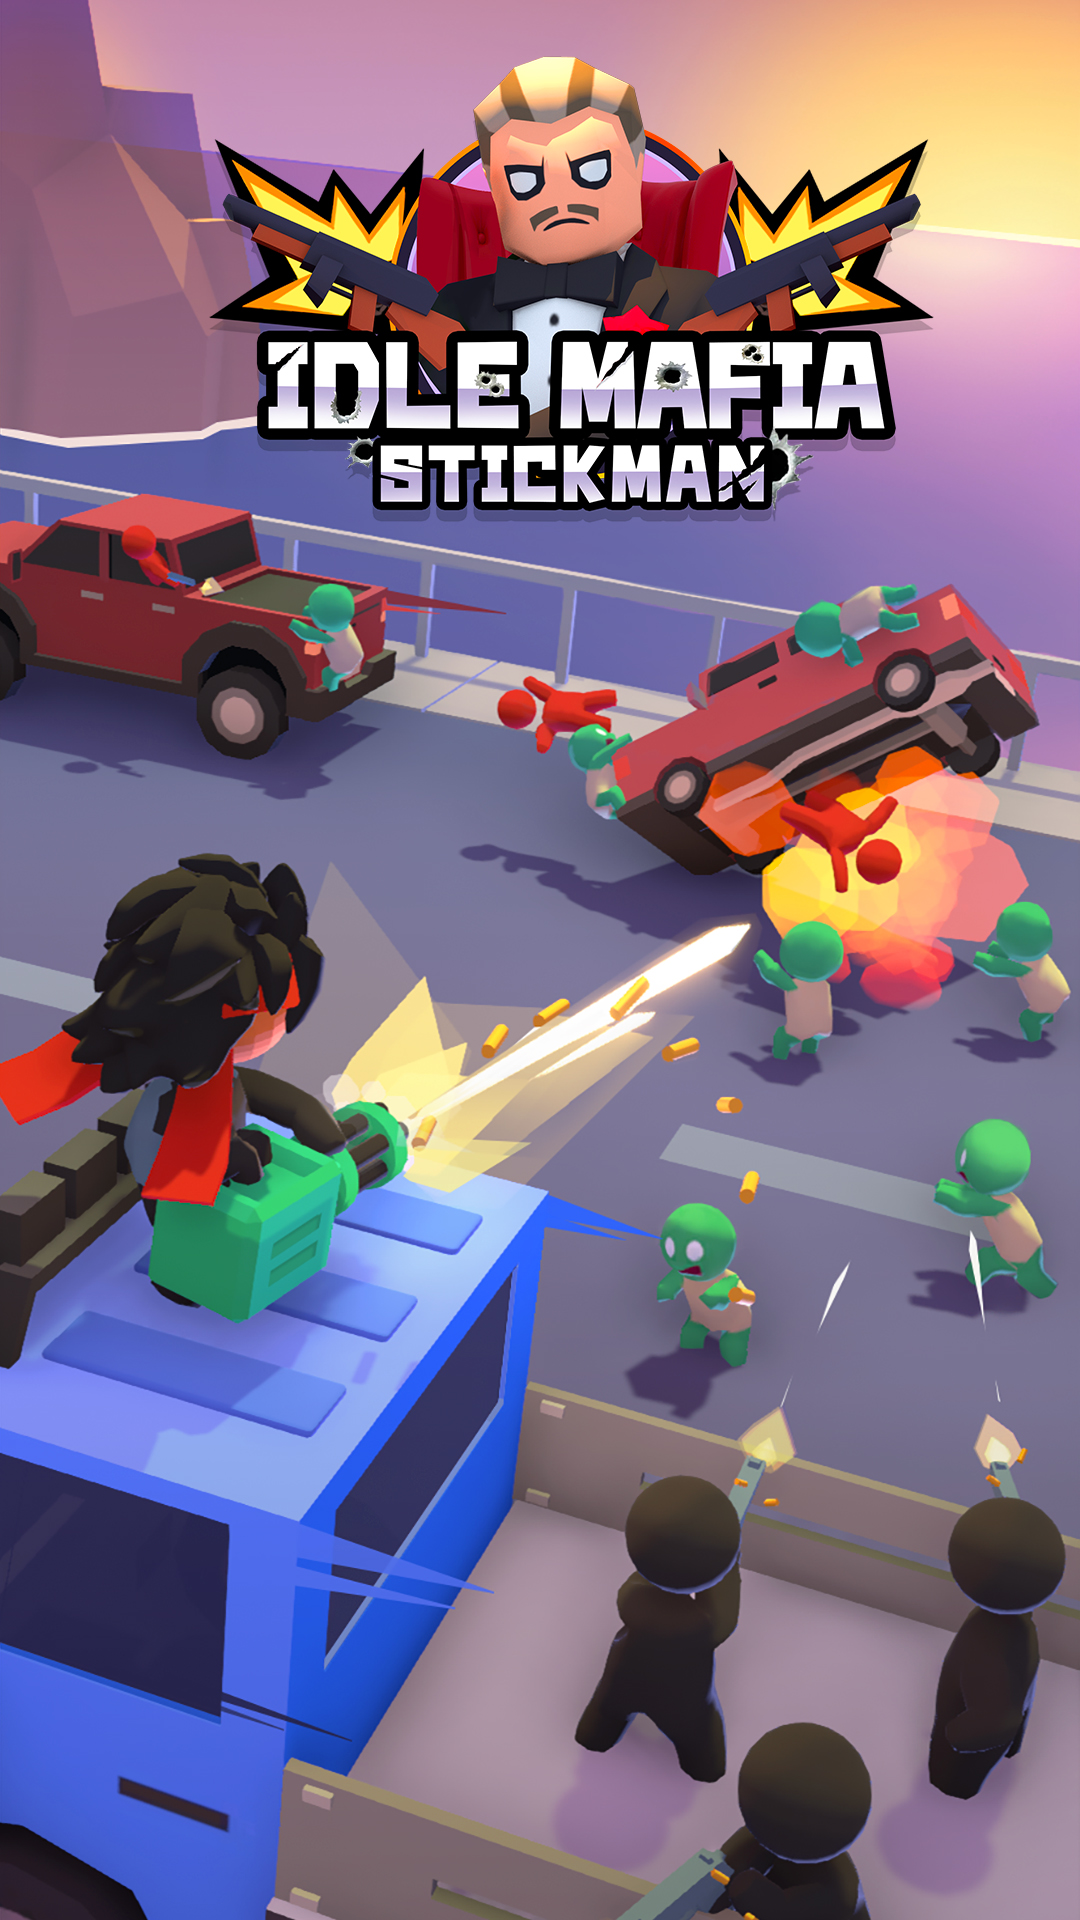 Ladda ner Stickman: Idle Mafia: Android Arkadspel spel till mobilen och surfplatta.